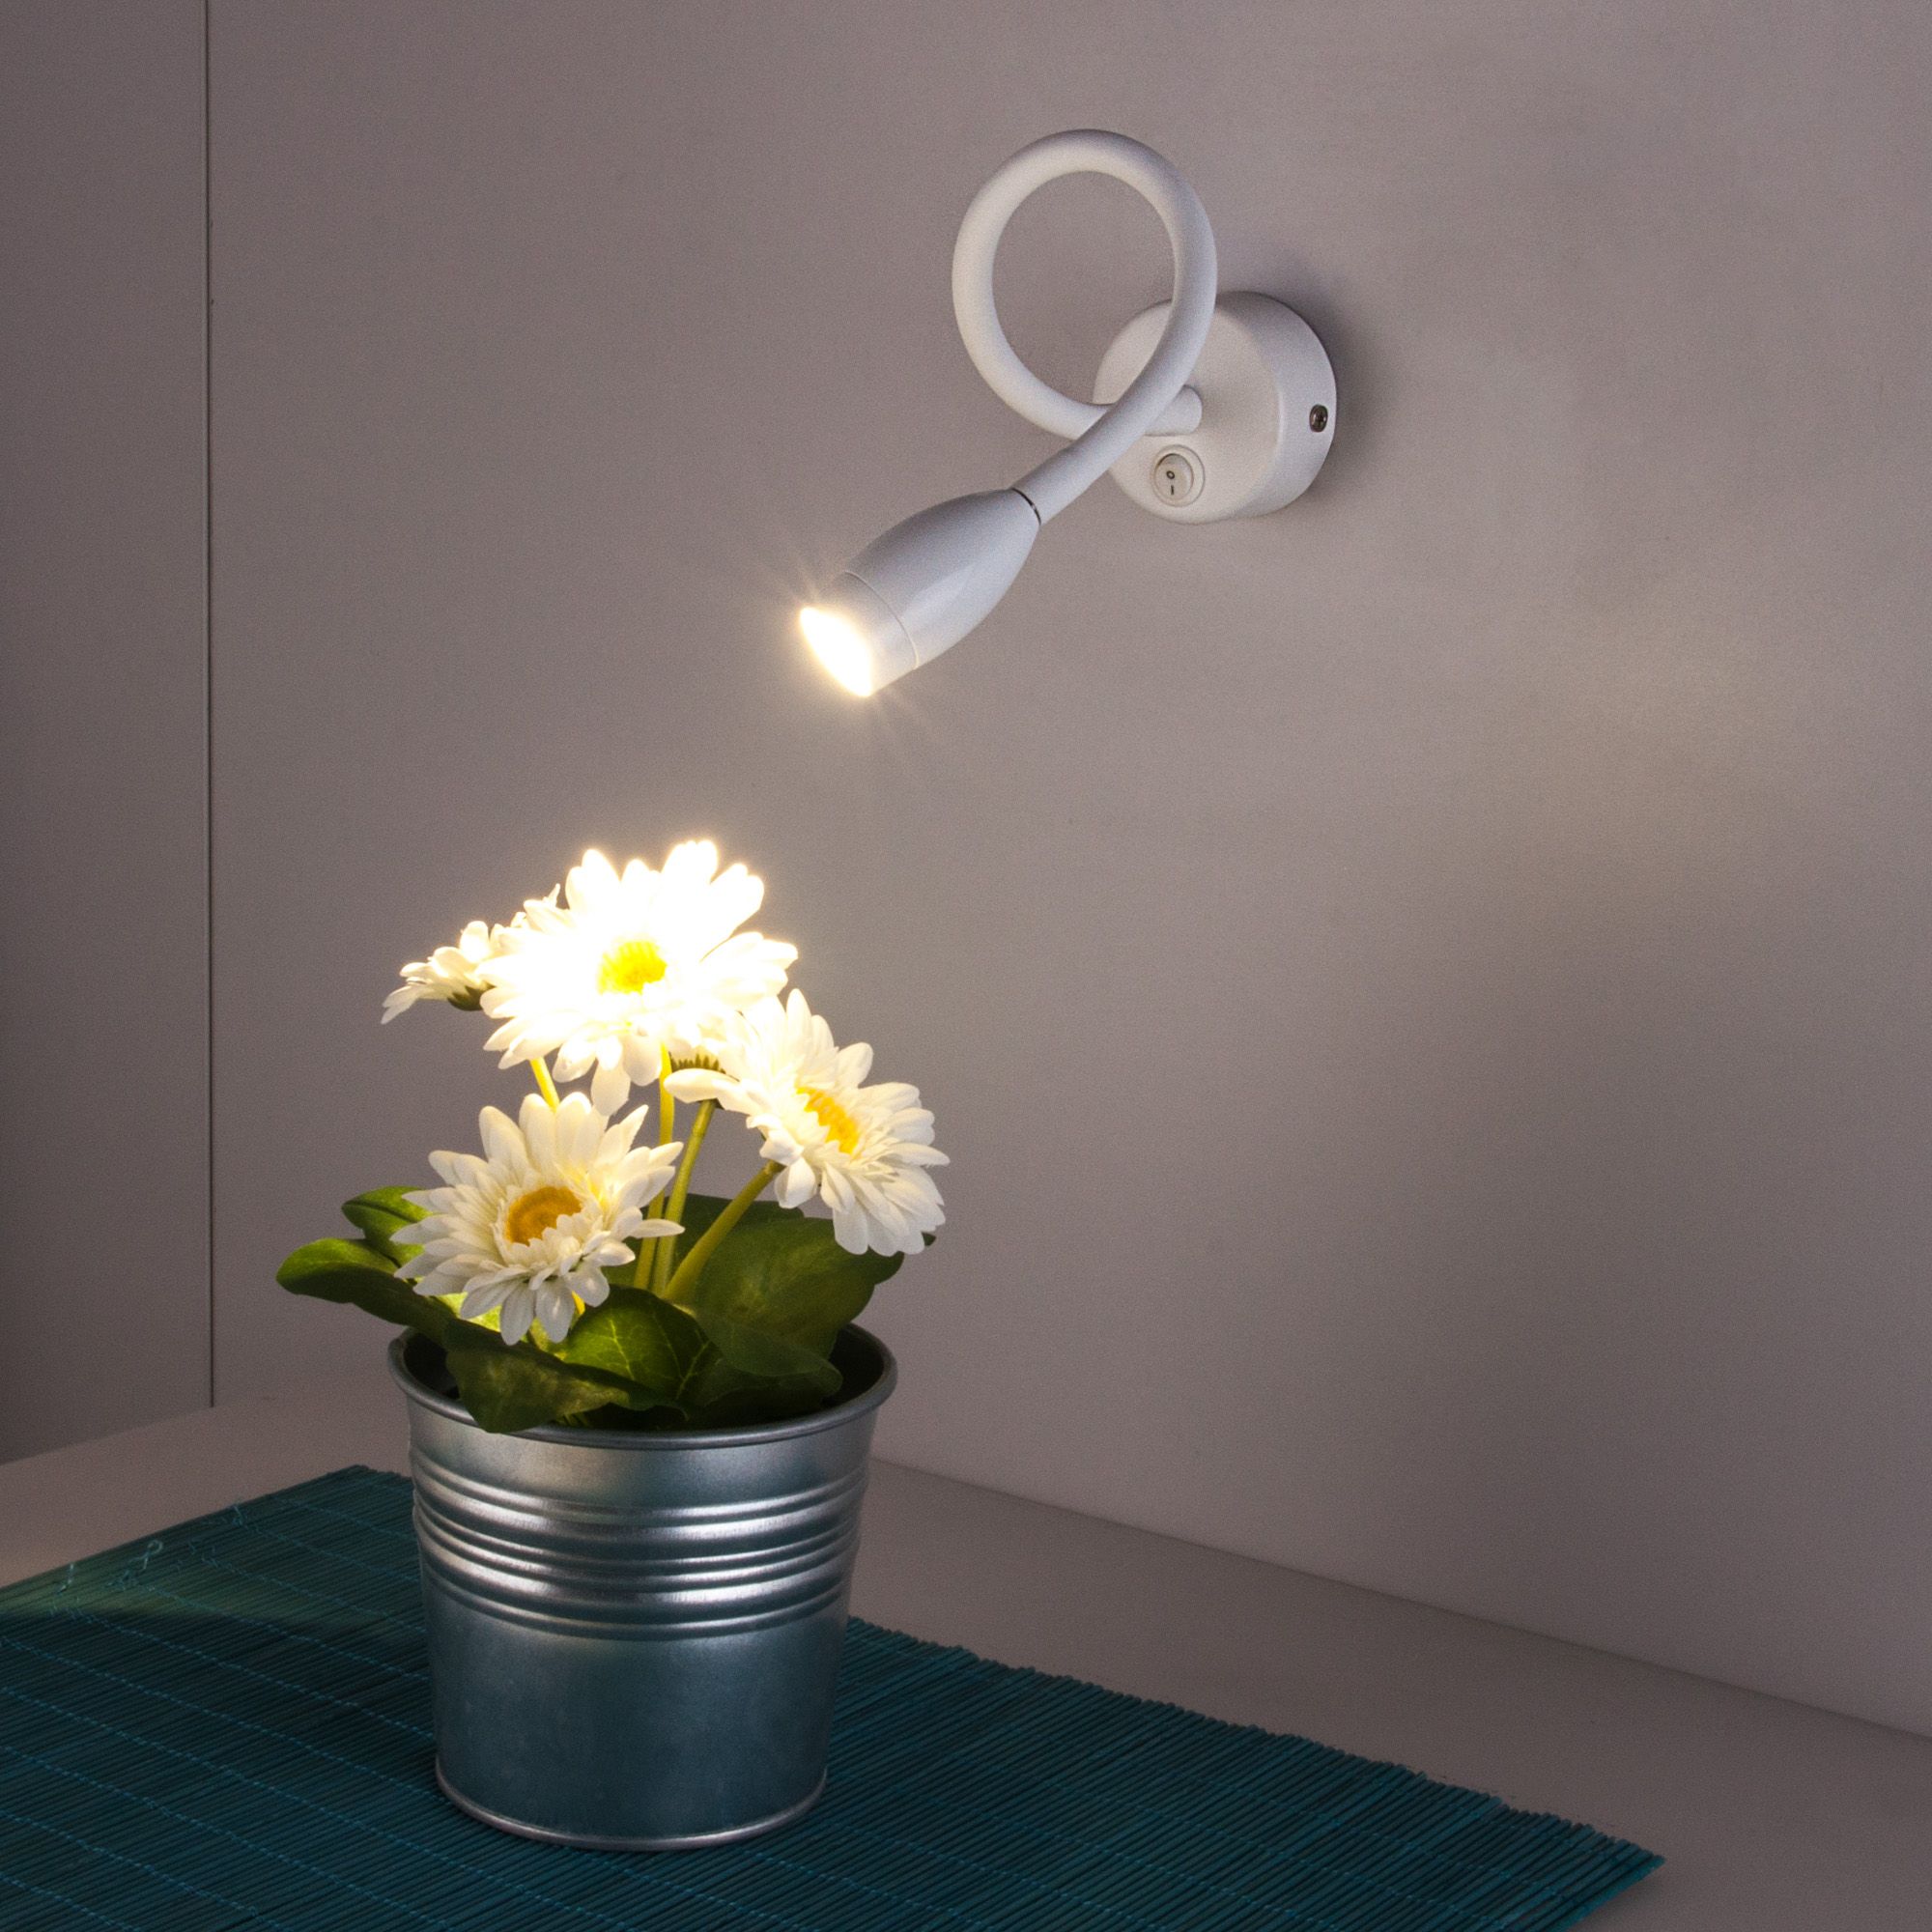 Настенный светодиодный светильник с гибким корпусом BAND LED MRL LED 1020 белый